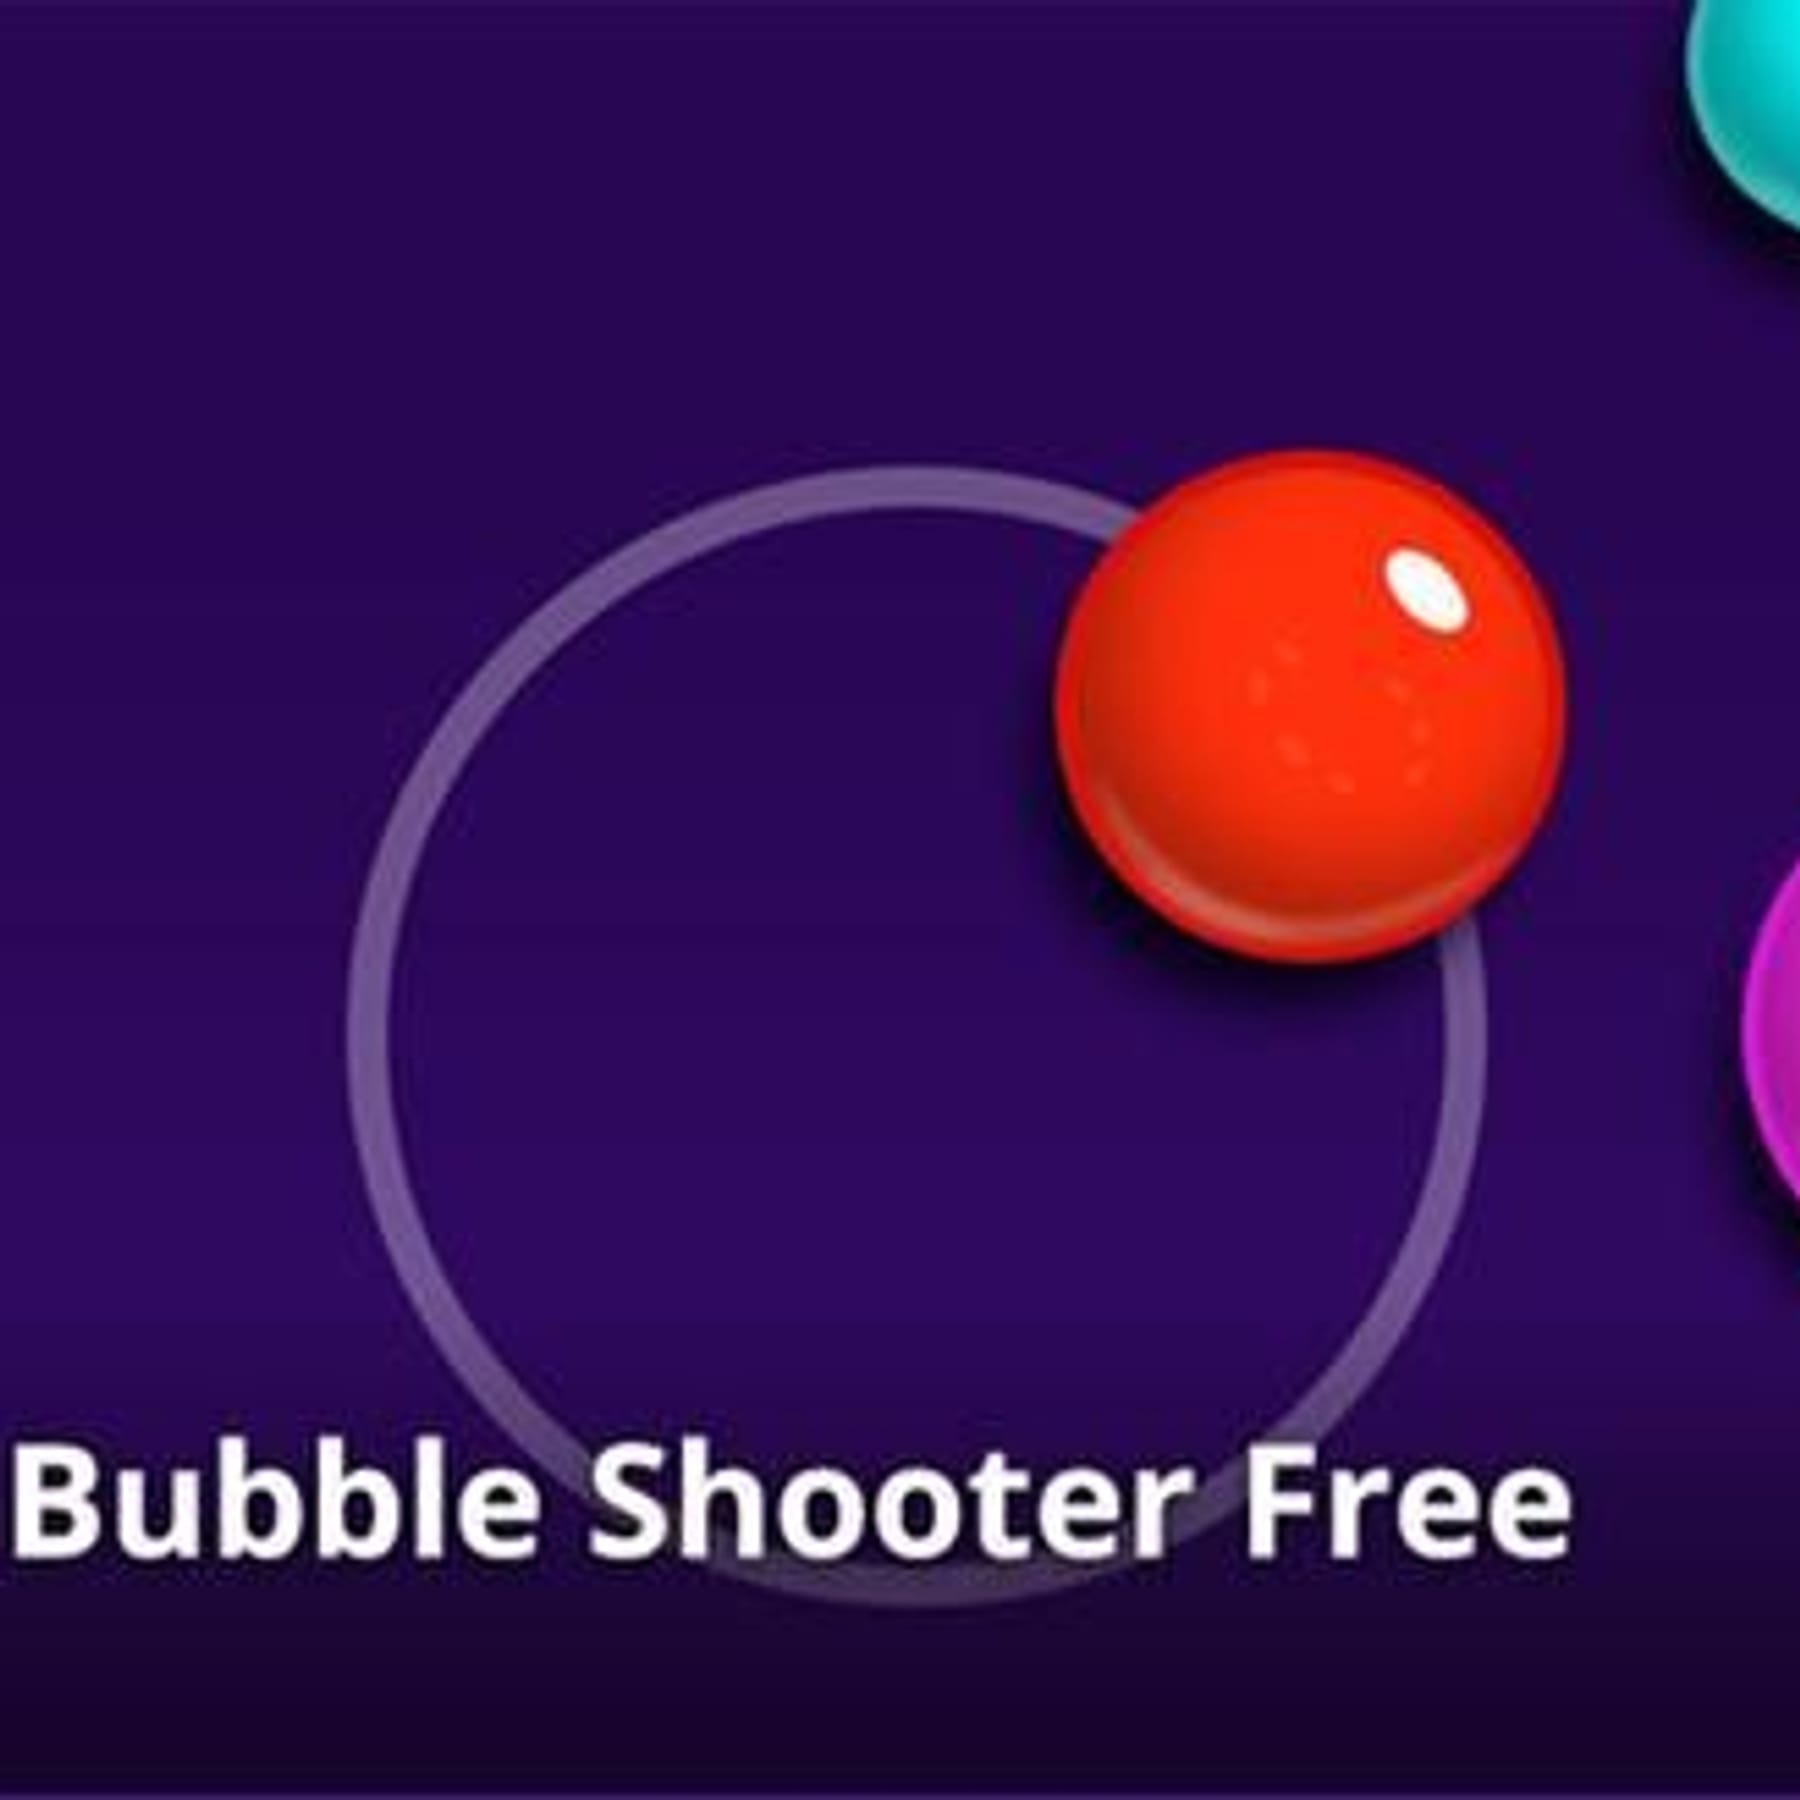 Bubble Shooter Free kostenlos online spielen bei t-online.de